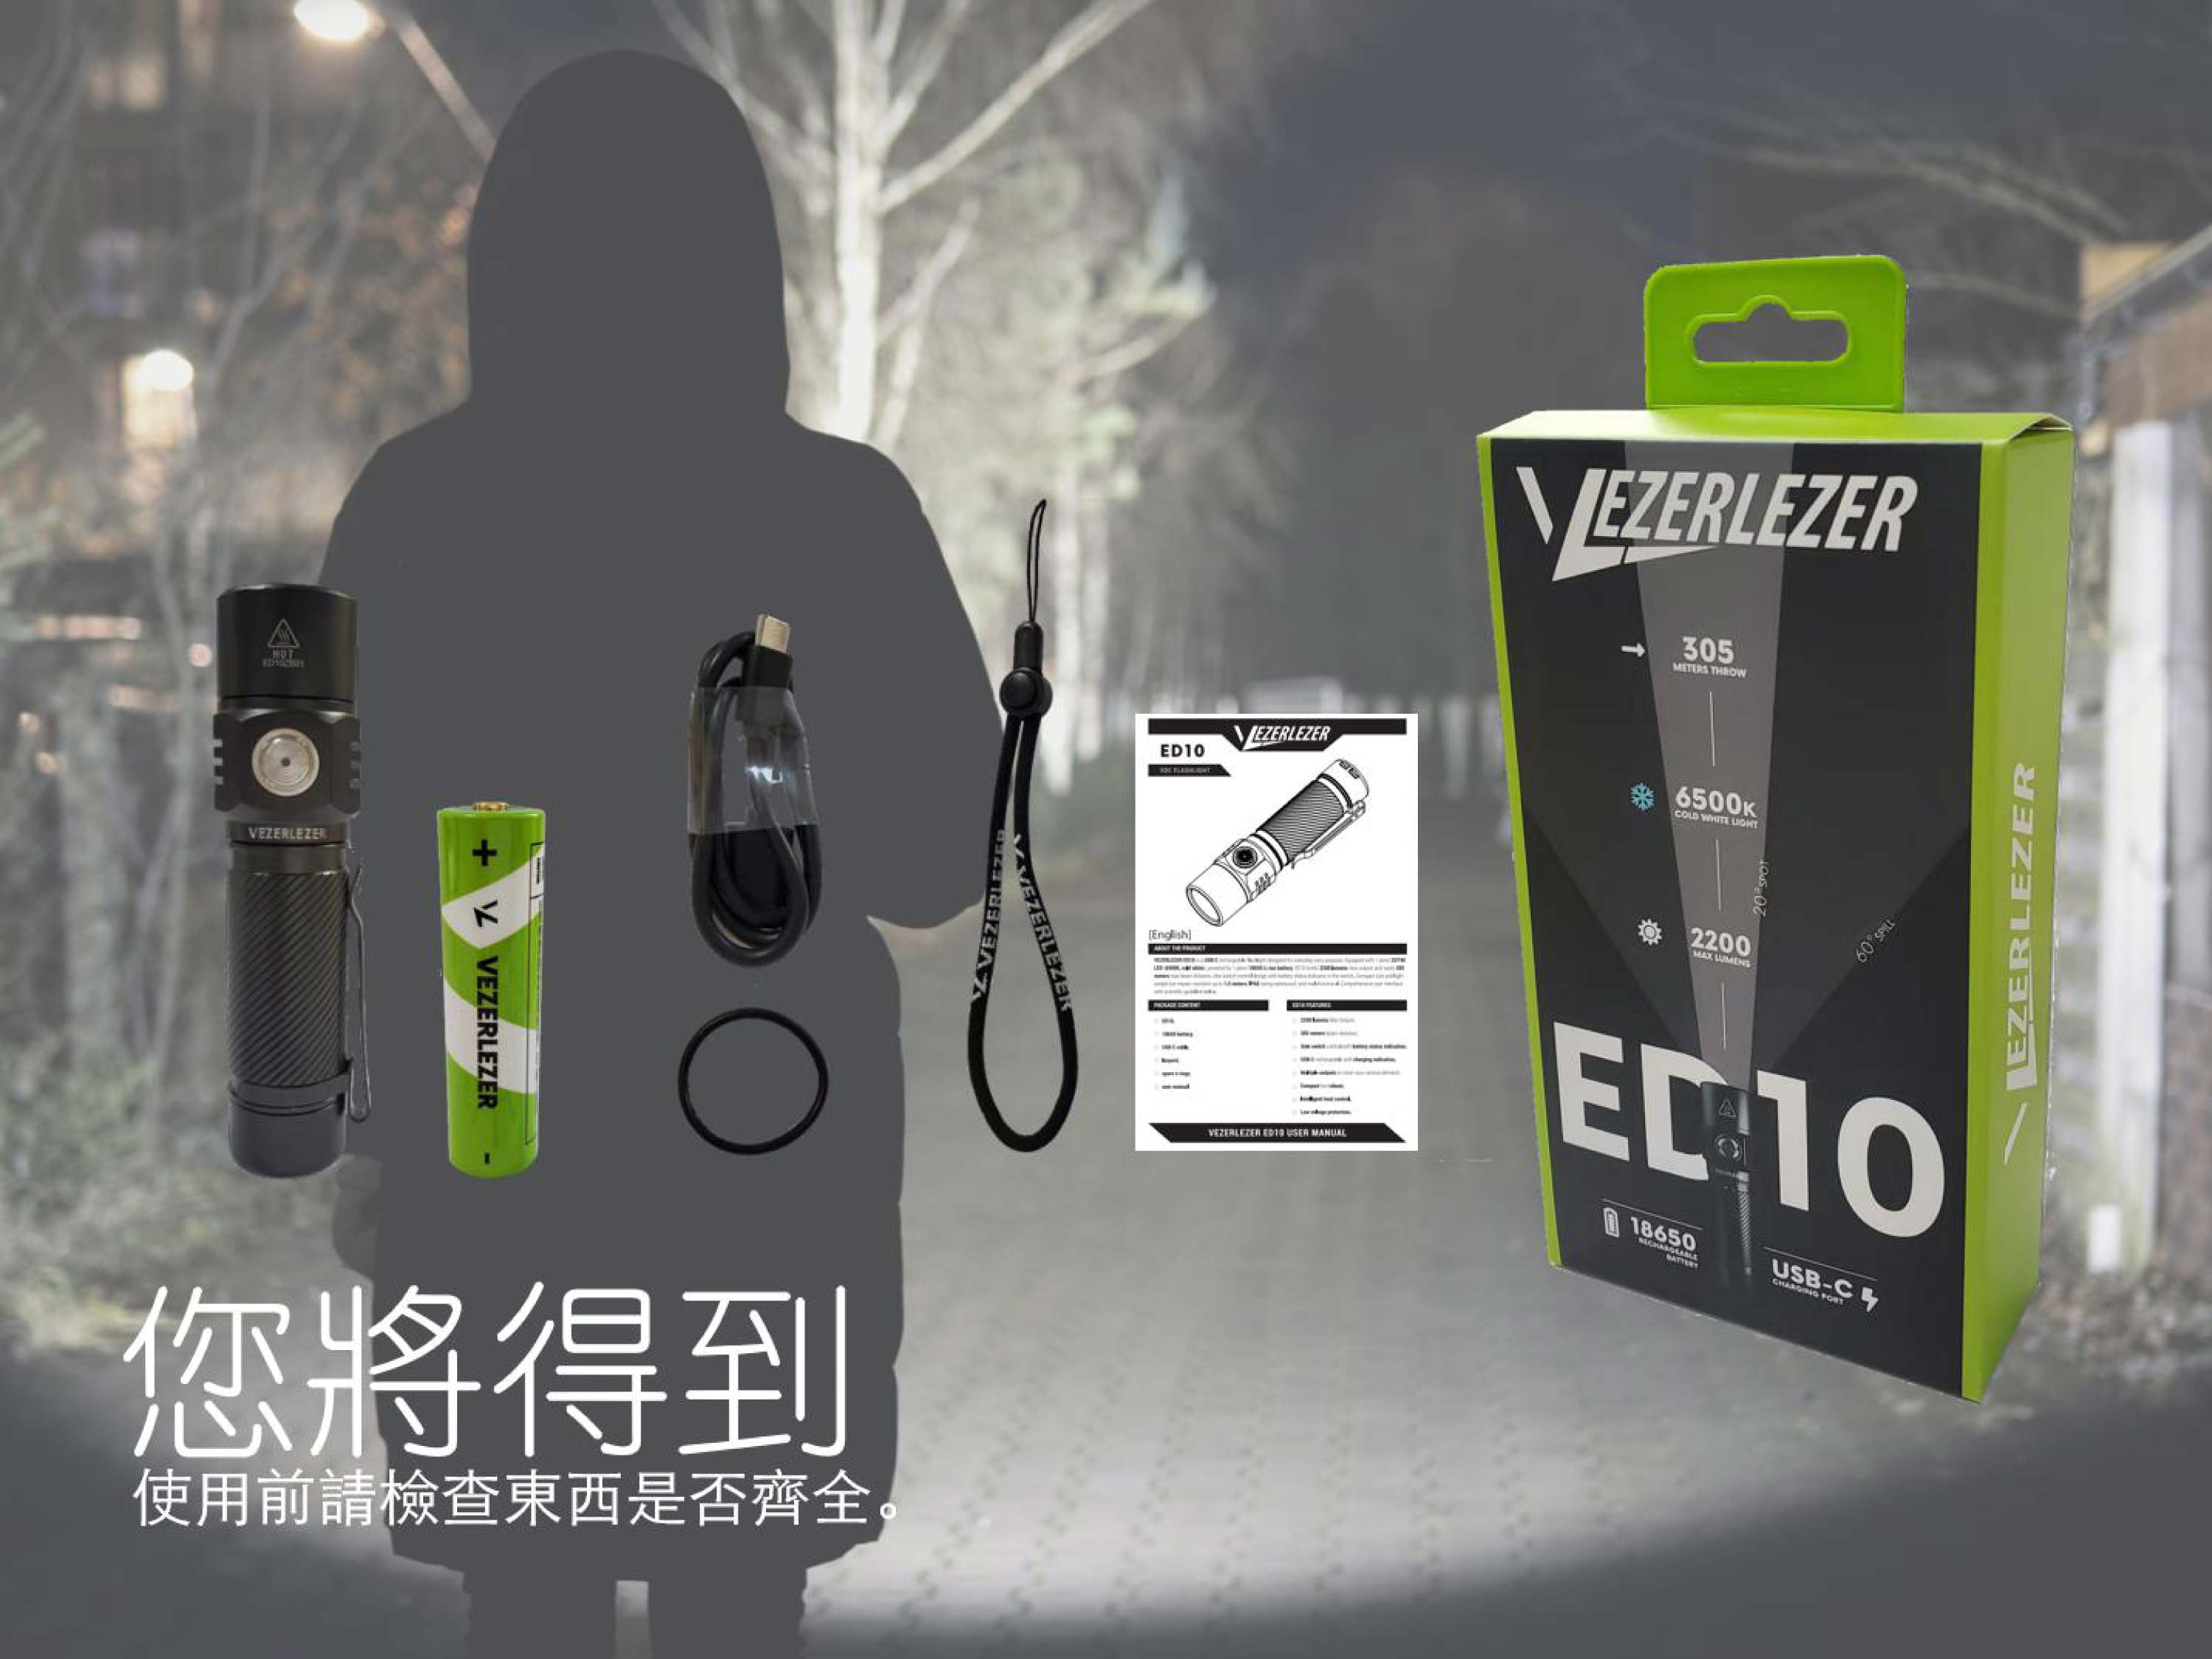 (新品團購) Vezerlezer ED10 2200 流明 305米 雙模式 無極調光 USB-C 平價高亮度入門手電筒 附電池